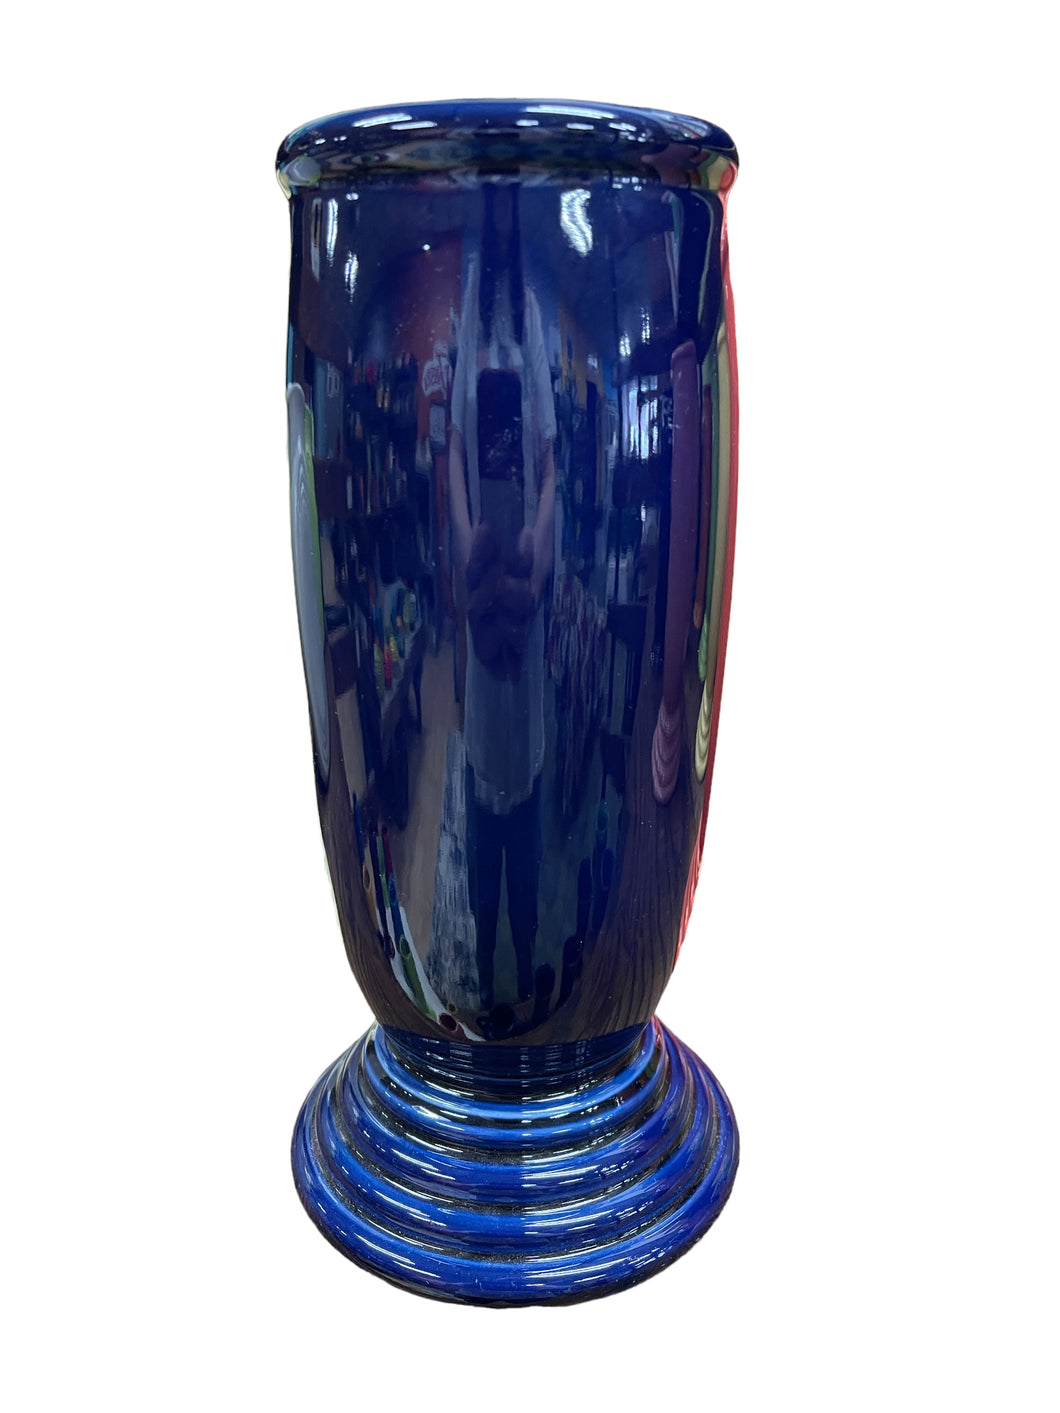 Fiesta Cobalt Millennium lll Vase